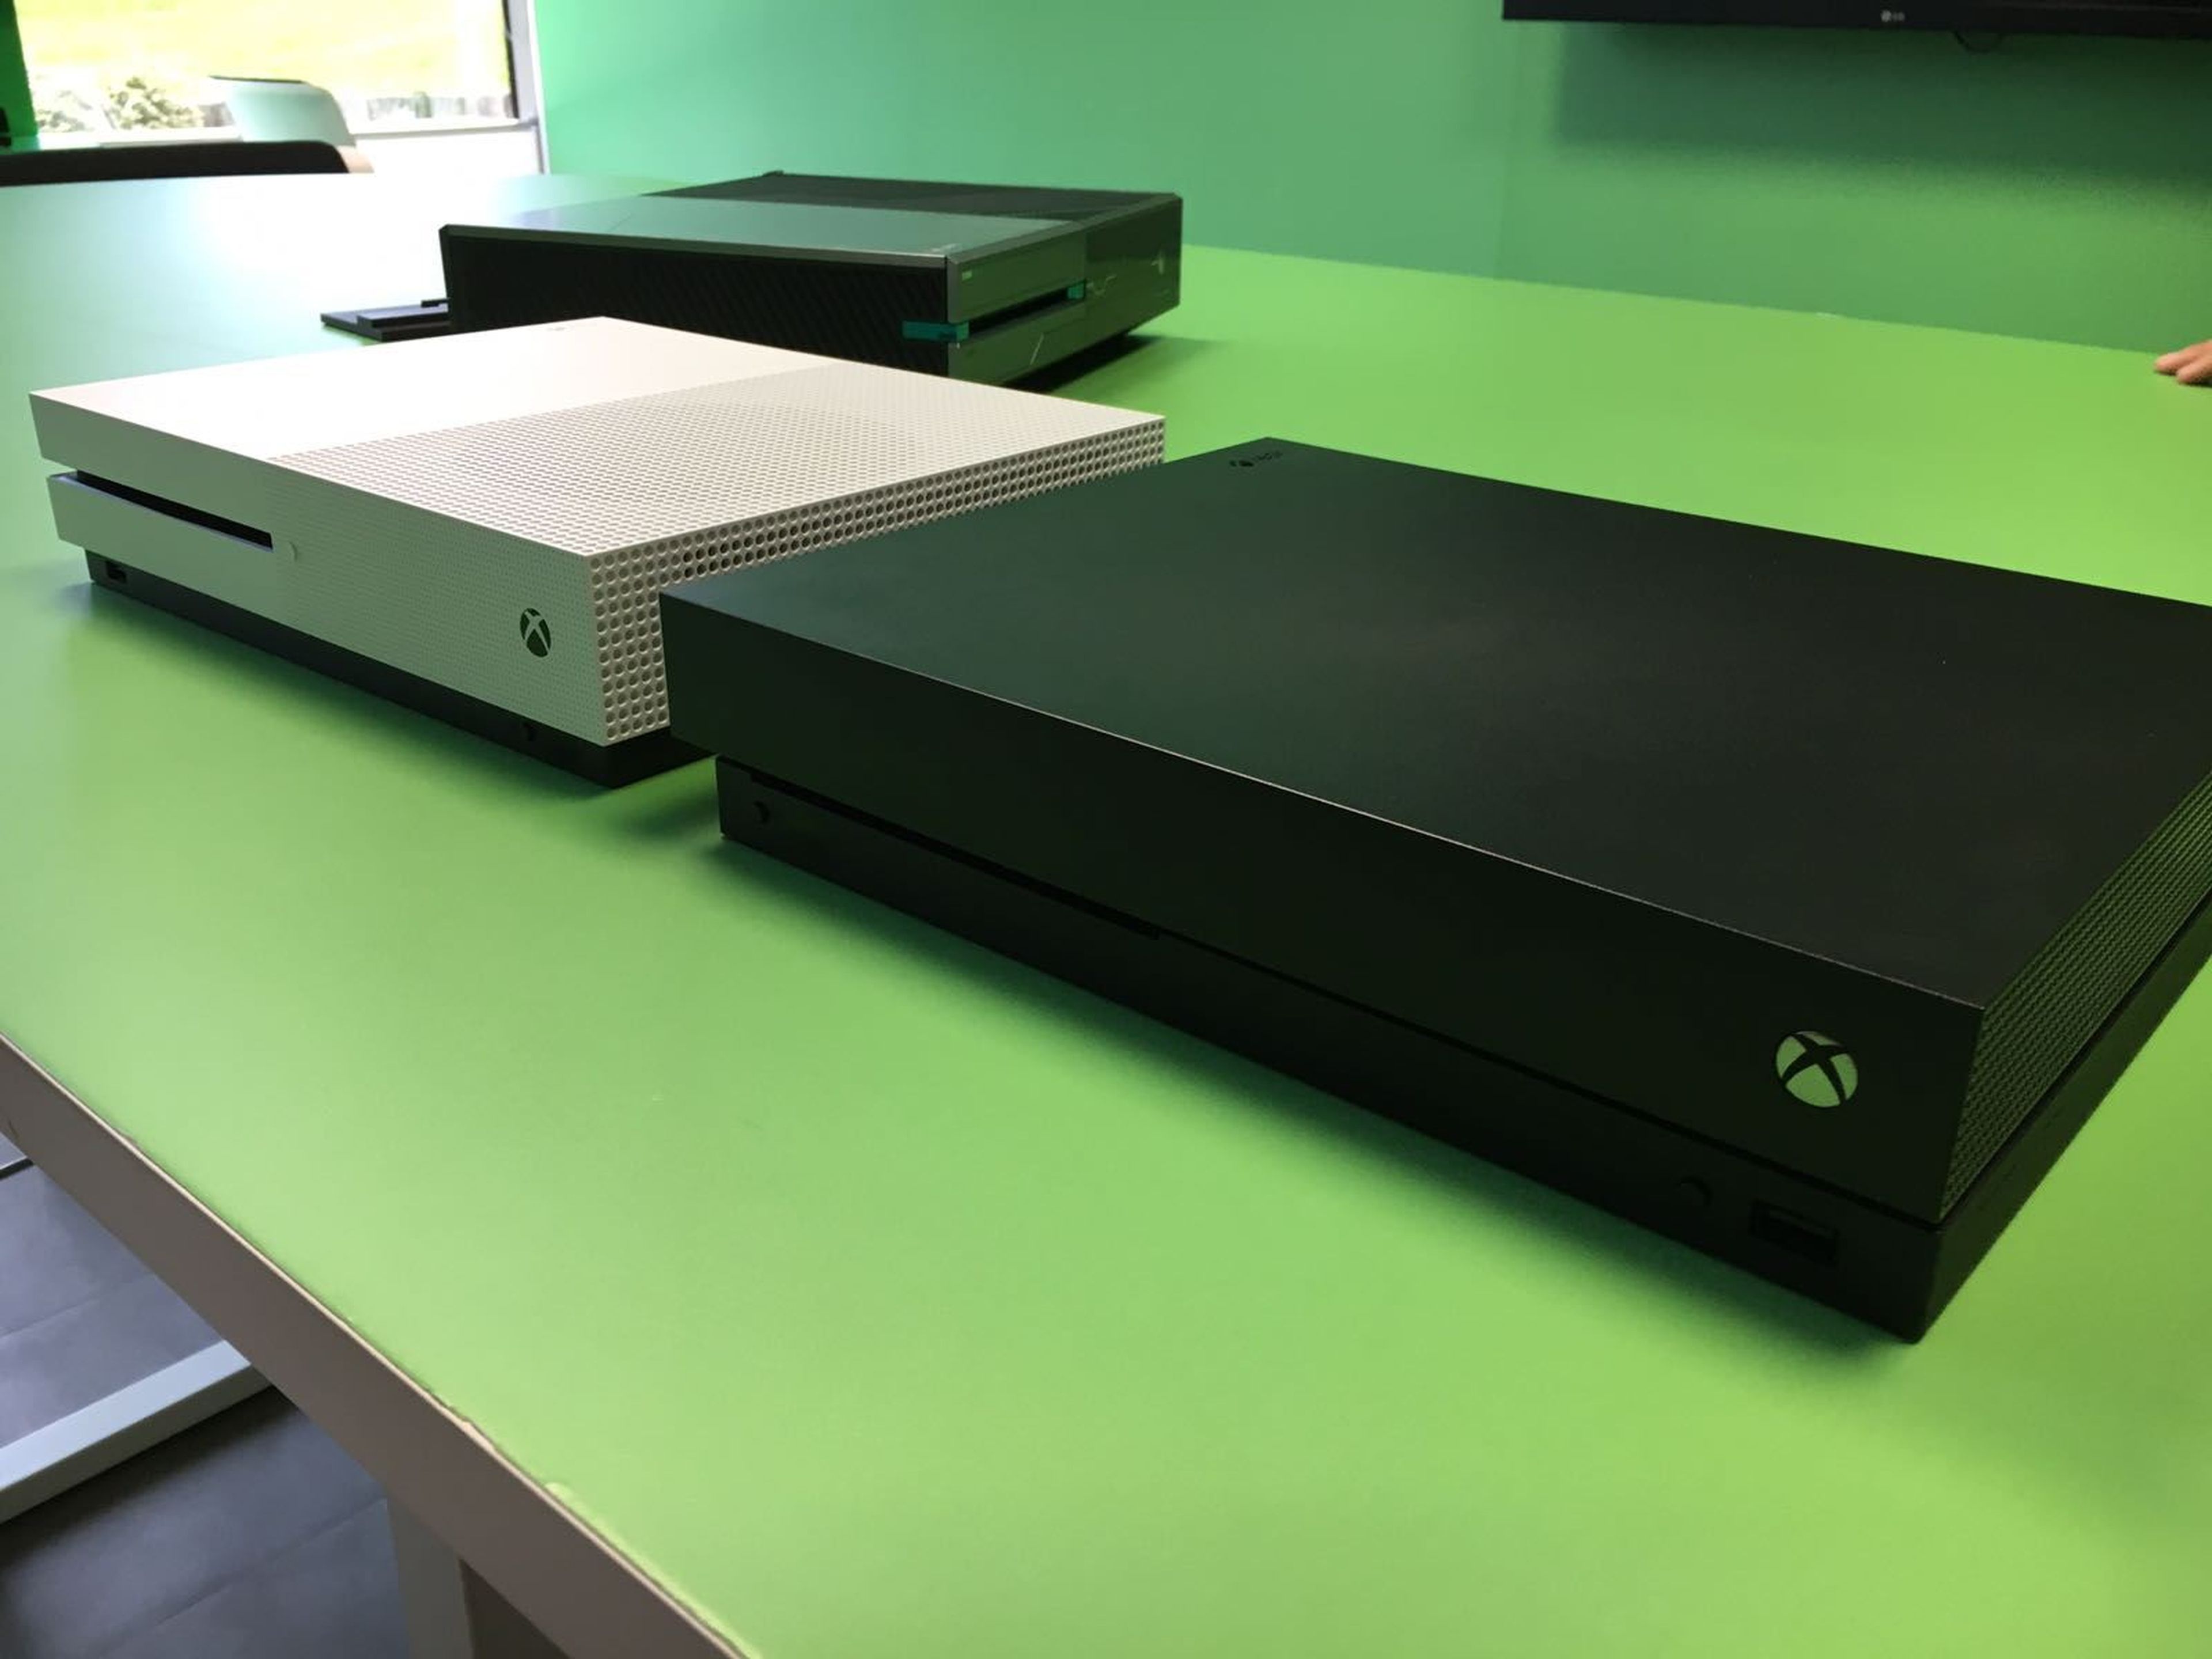 Microsoft anunciaría hoy la rebaja en el precio de Xbox One X (rumor)